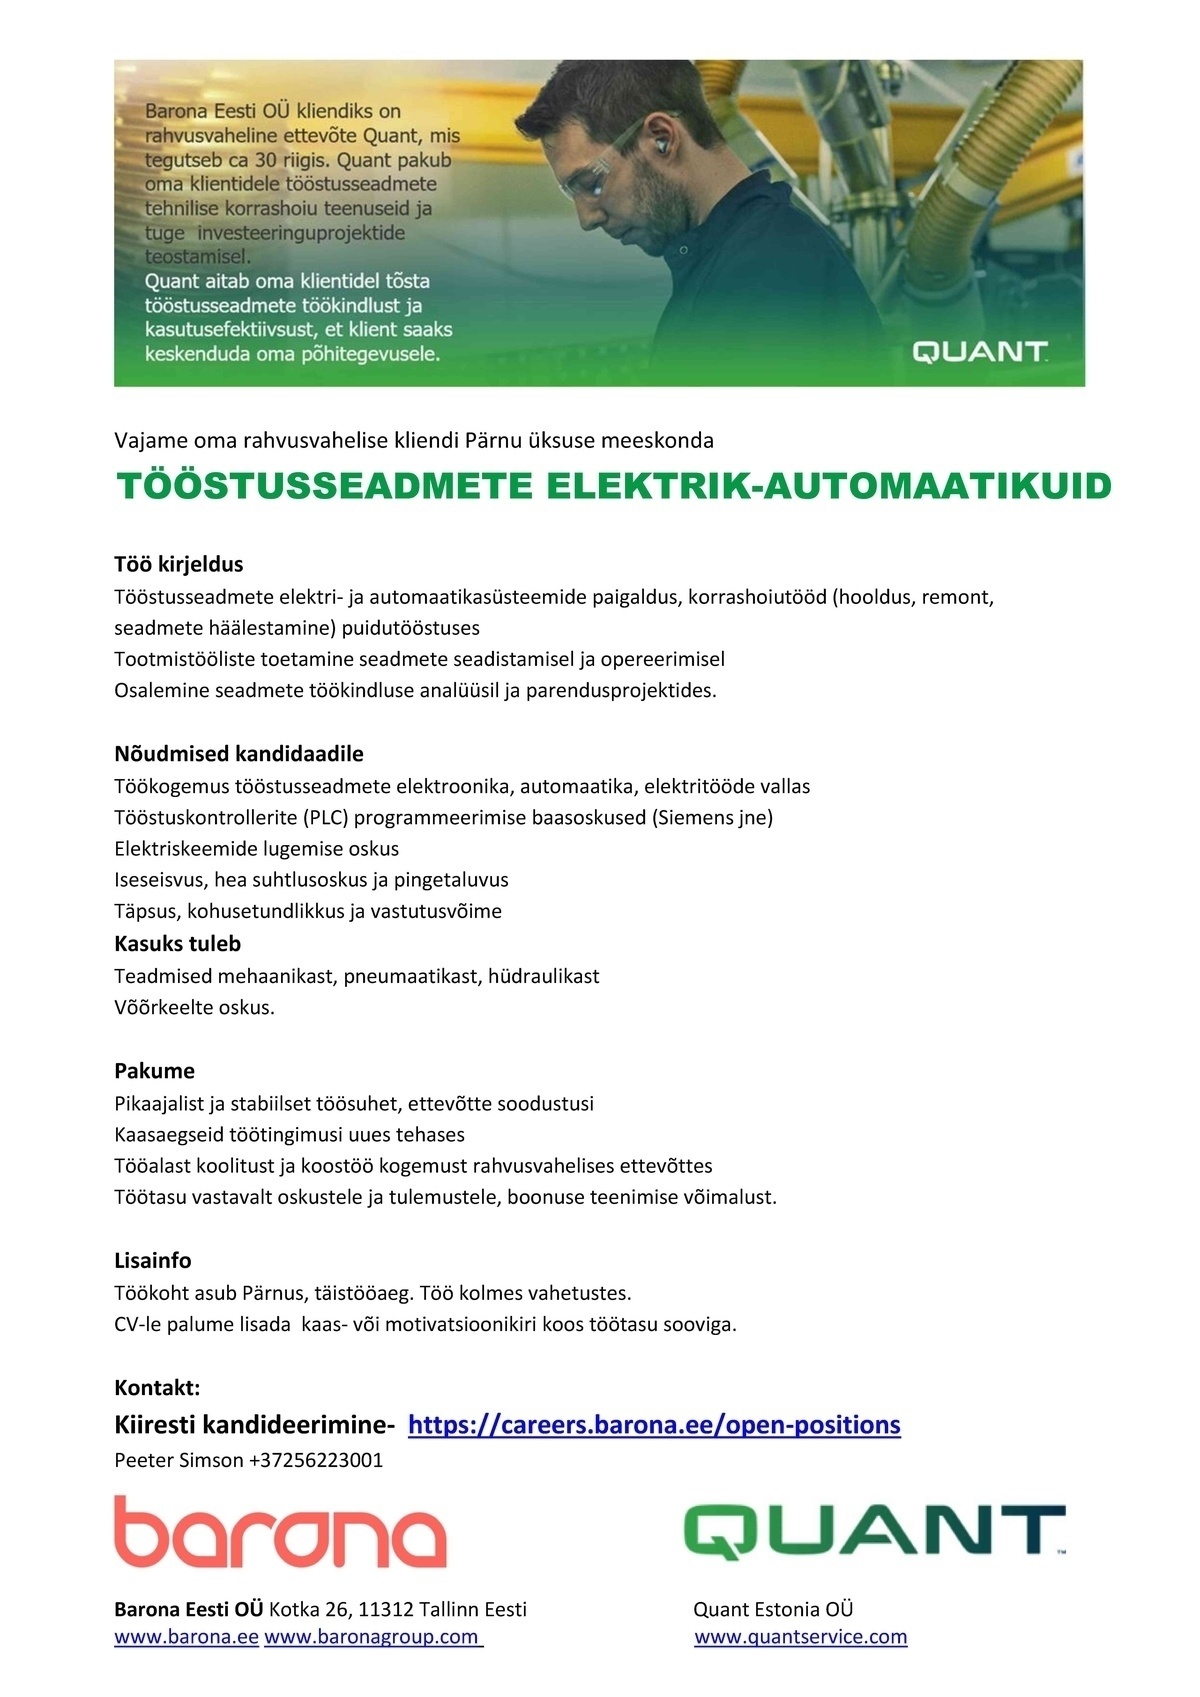 Barona Eesti OÜ  Elektrik/automaatikuid (PLC kontrollerite seadistus oskusega) Pärnusse